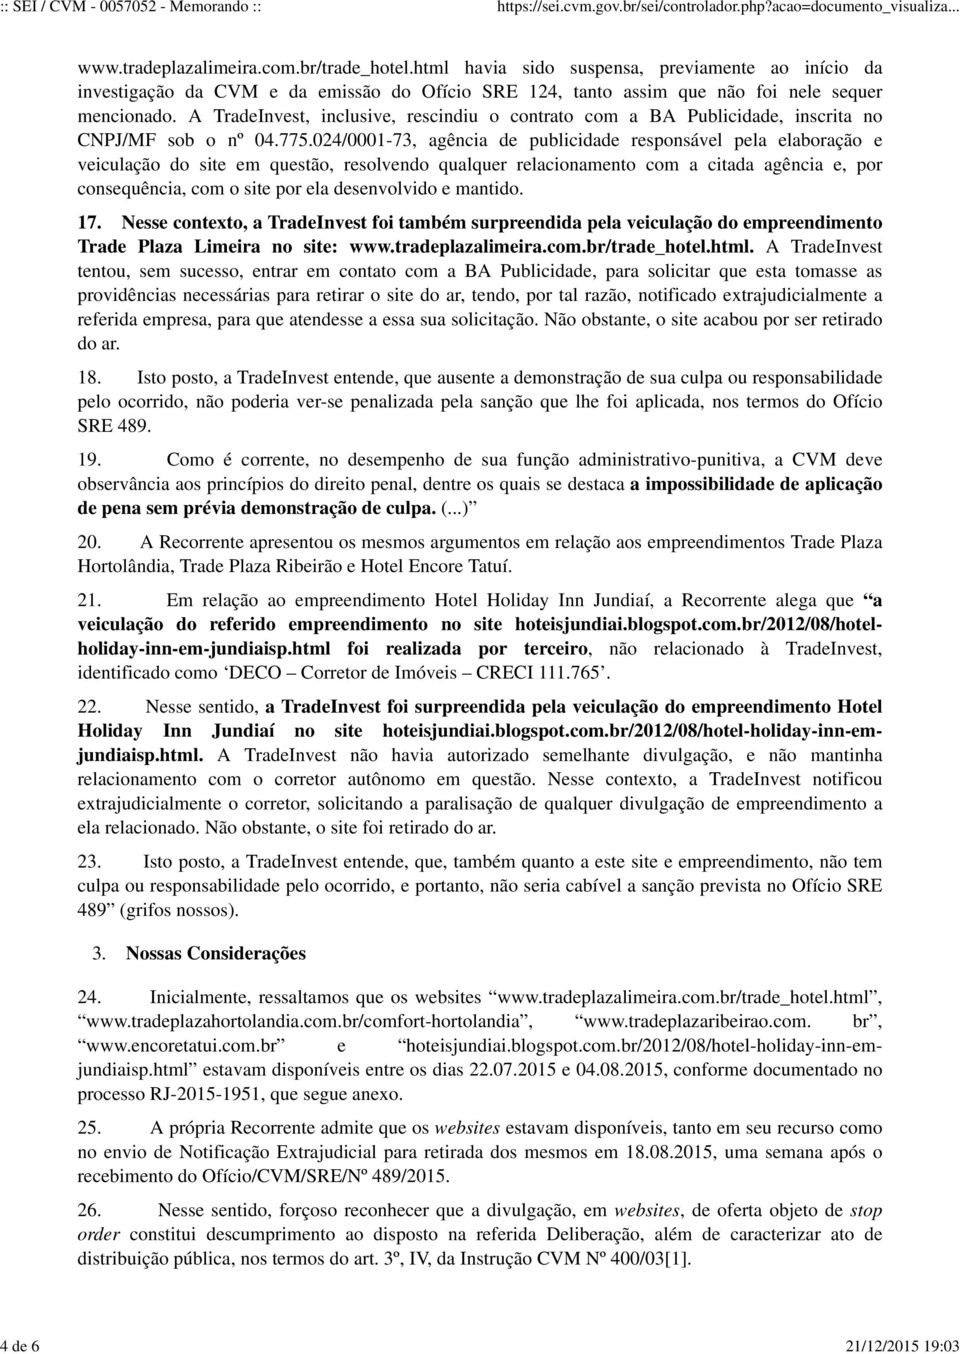 A TradeInvest, inclusive, rescindiu o contrato com a BA Publicidade, inscrita no CNPJ/MF sob o nº 04.775.